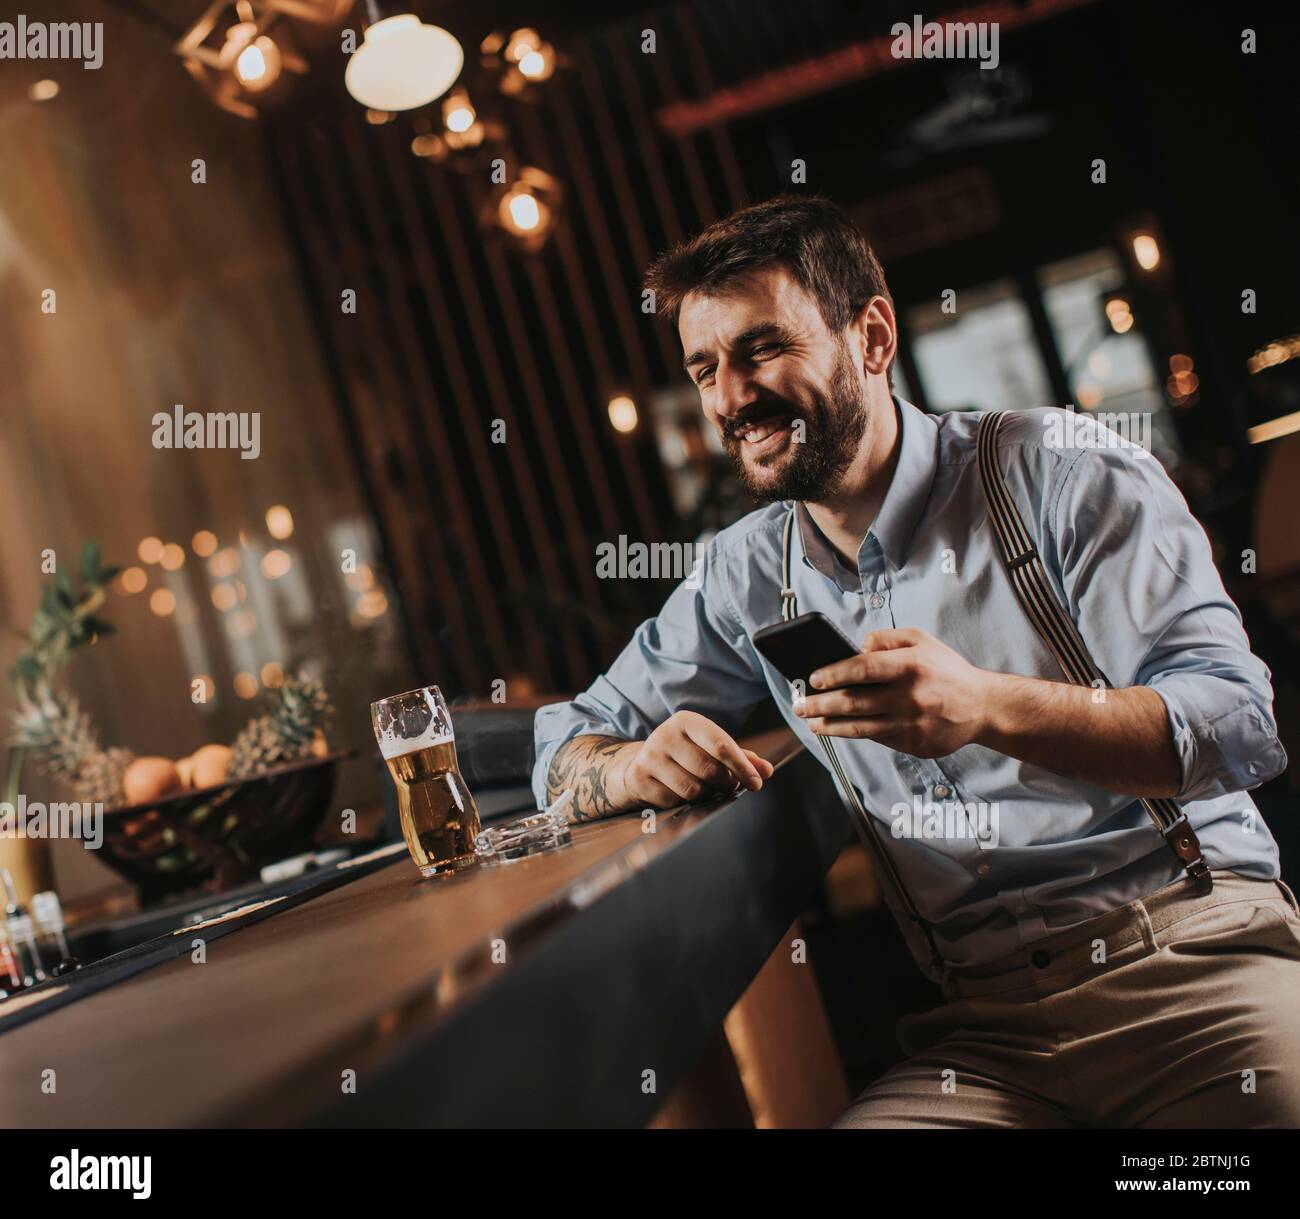 Un jeune homme heureux qui boit de la bière, fume de la cigarette et utilise le téléphone portable au pub Banque D'Images